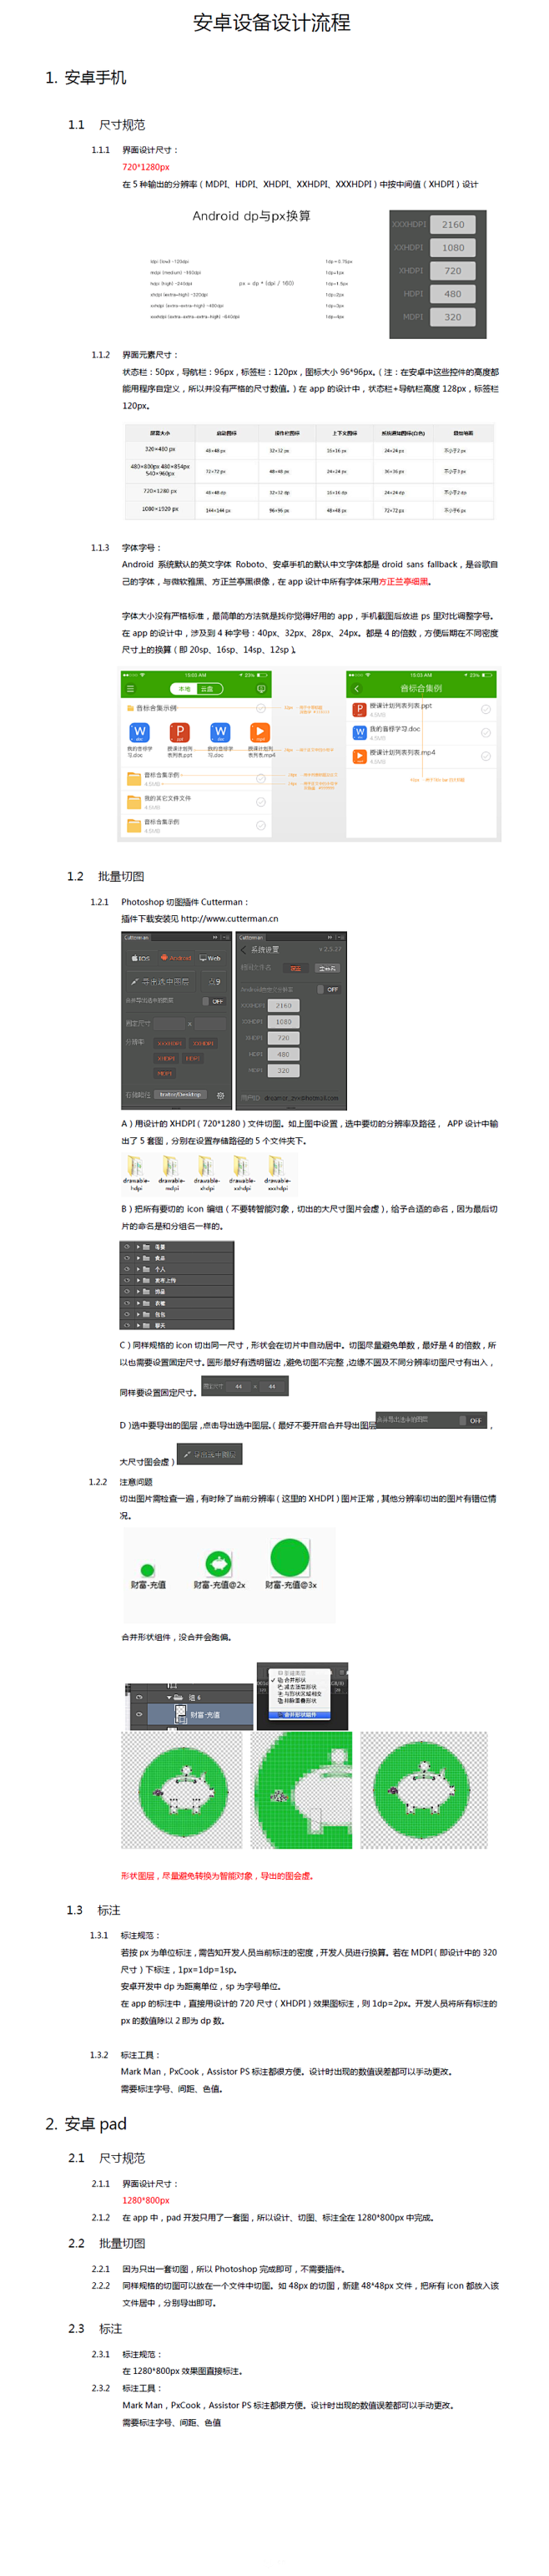 安卓和ios的移动视觉设计规范-UI中国...